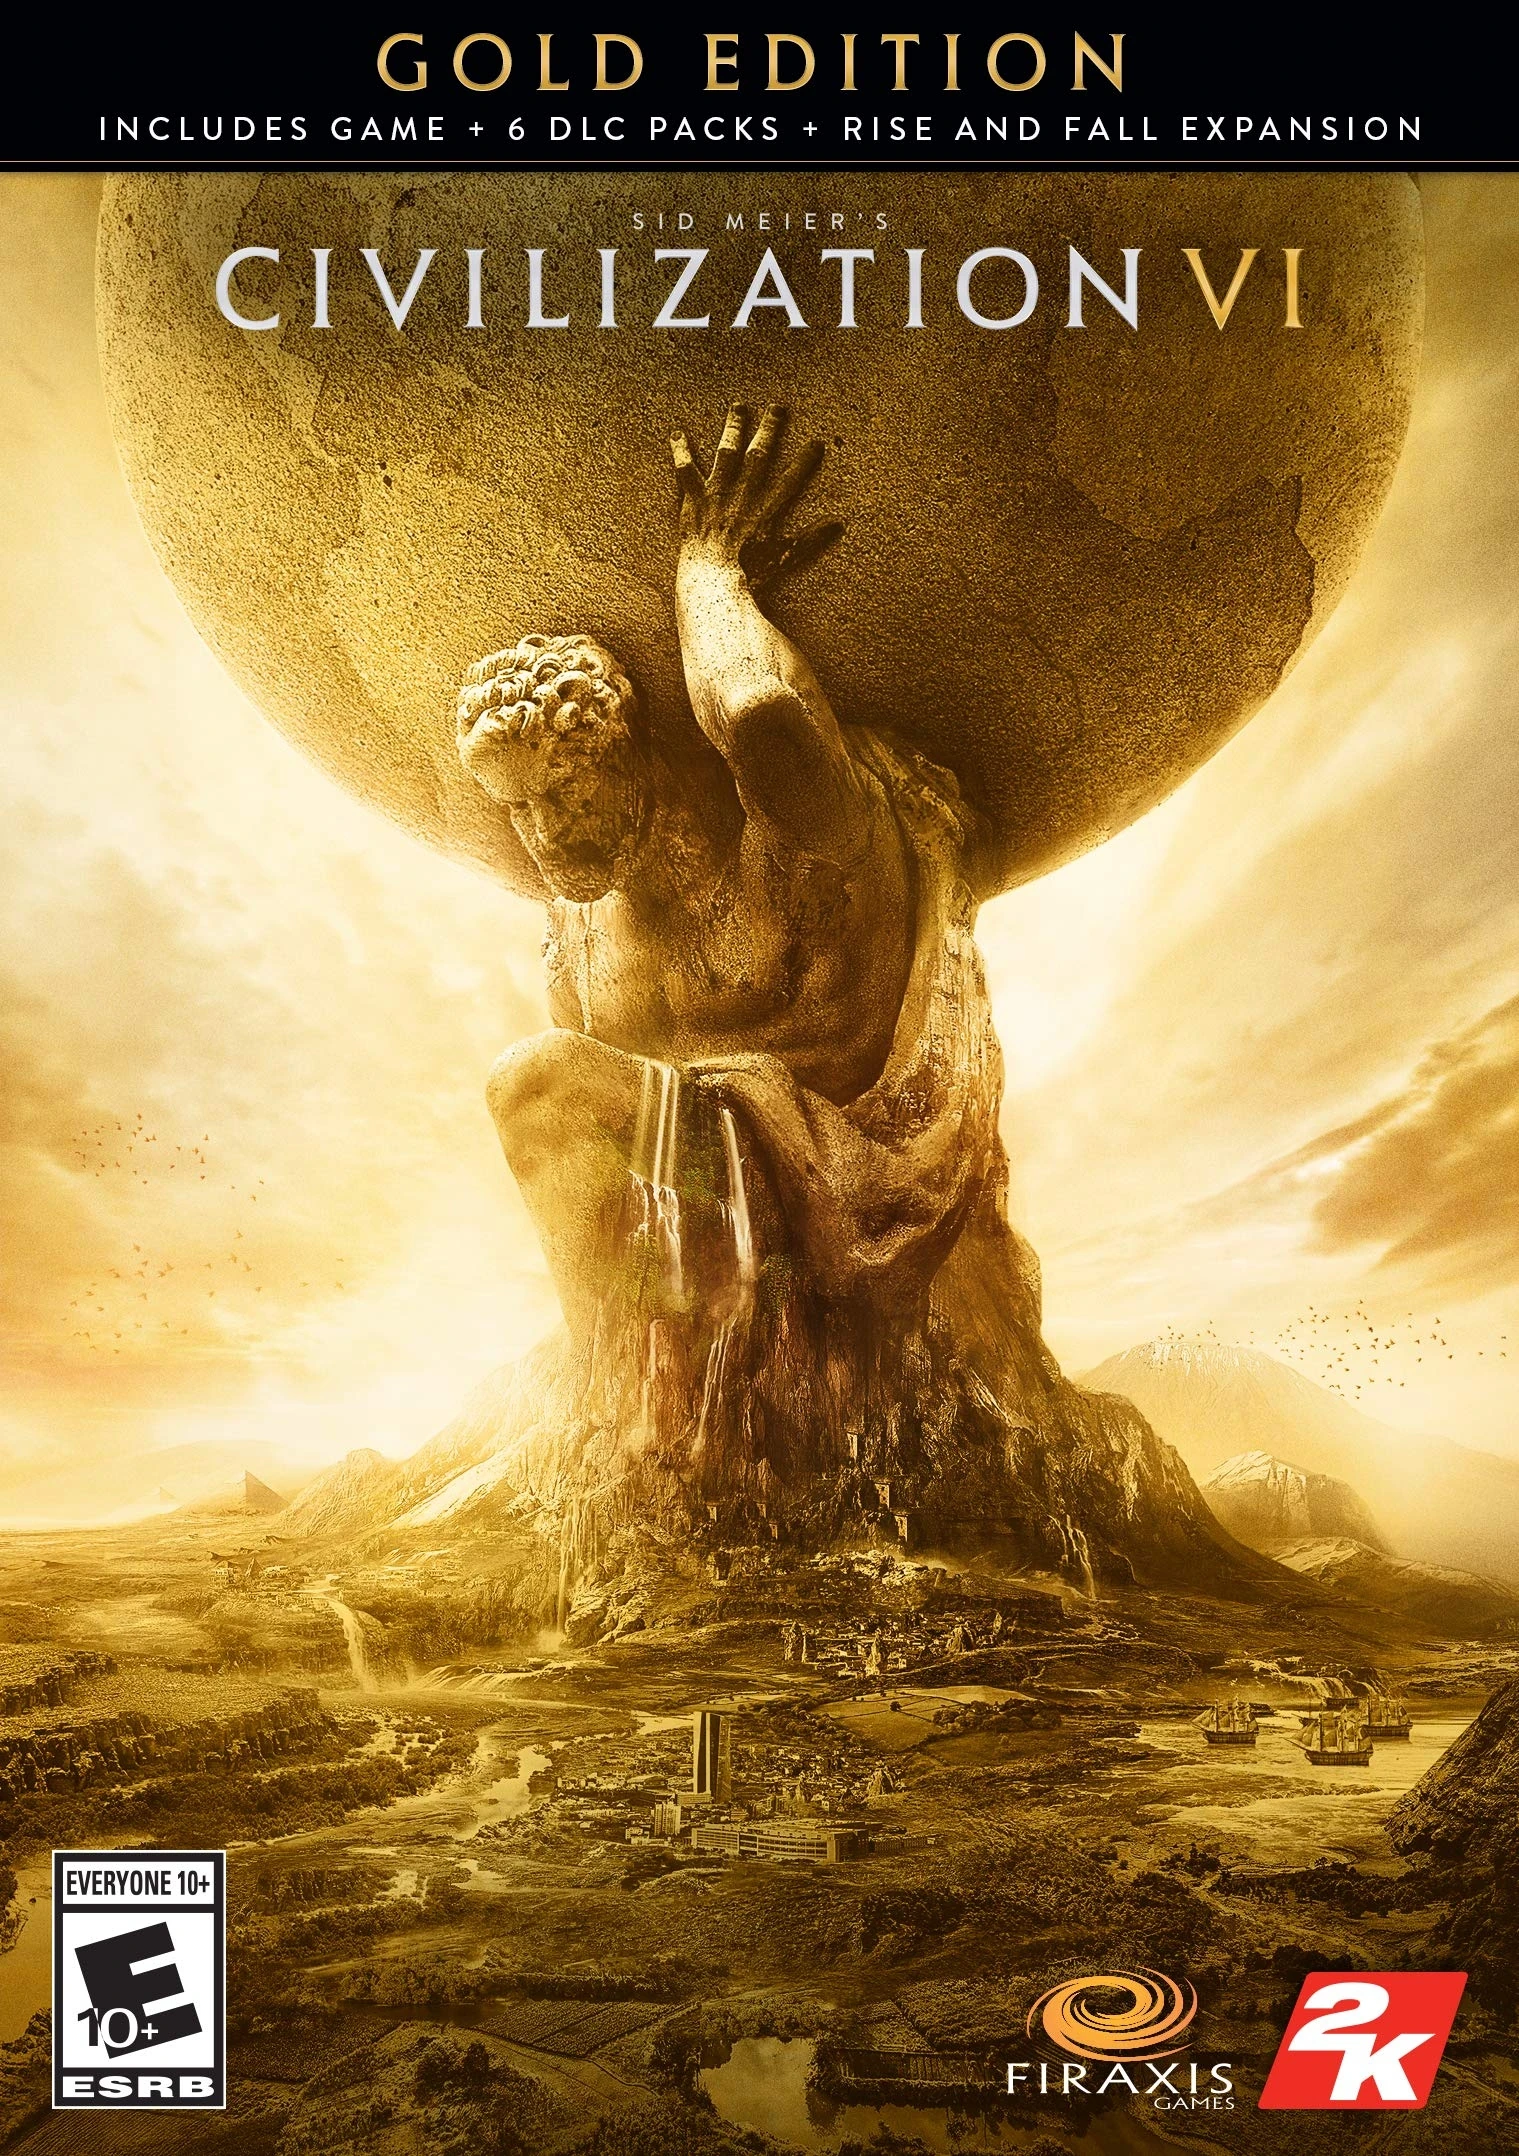 Civilization VI Gold Edition (EU) (PC / Mac / Linux) - Steam - Digital Code